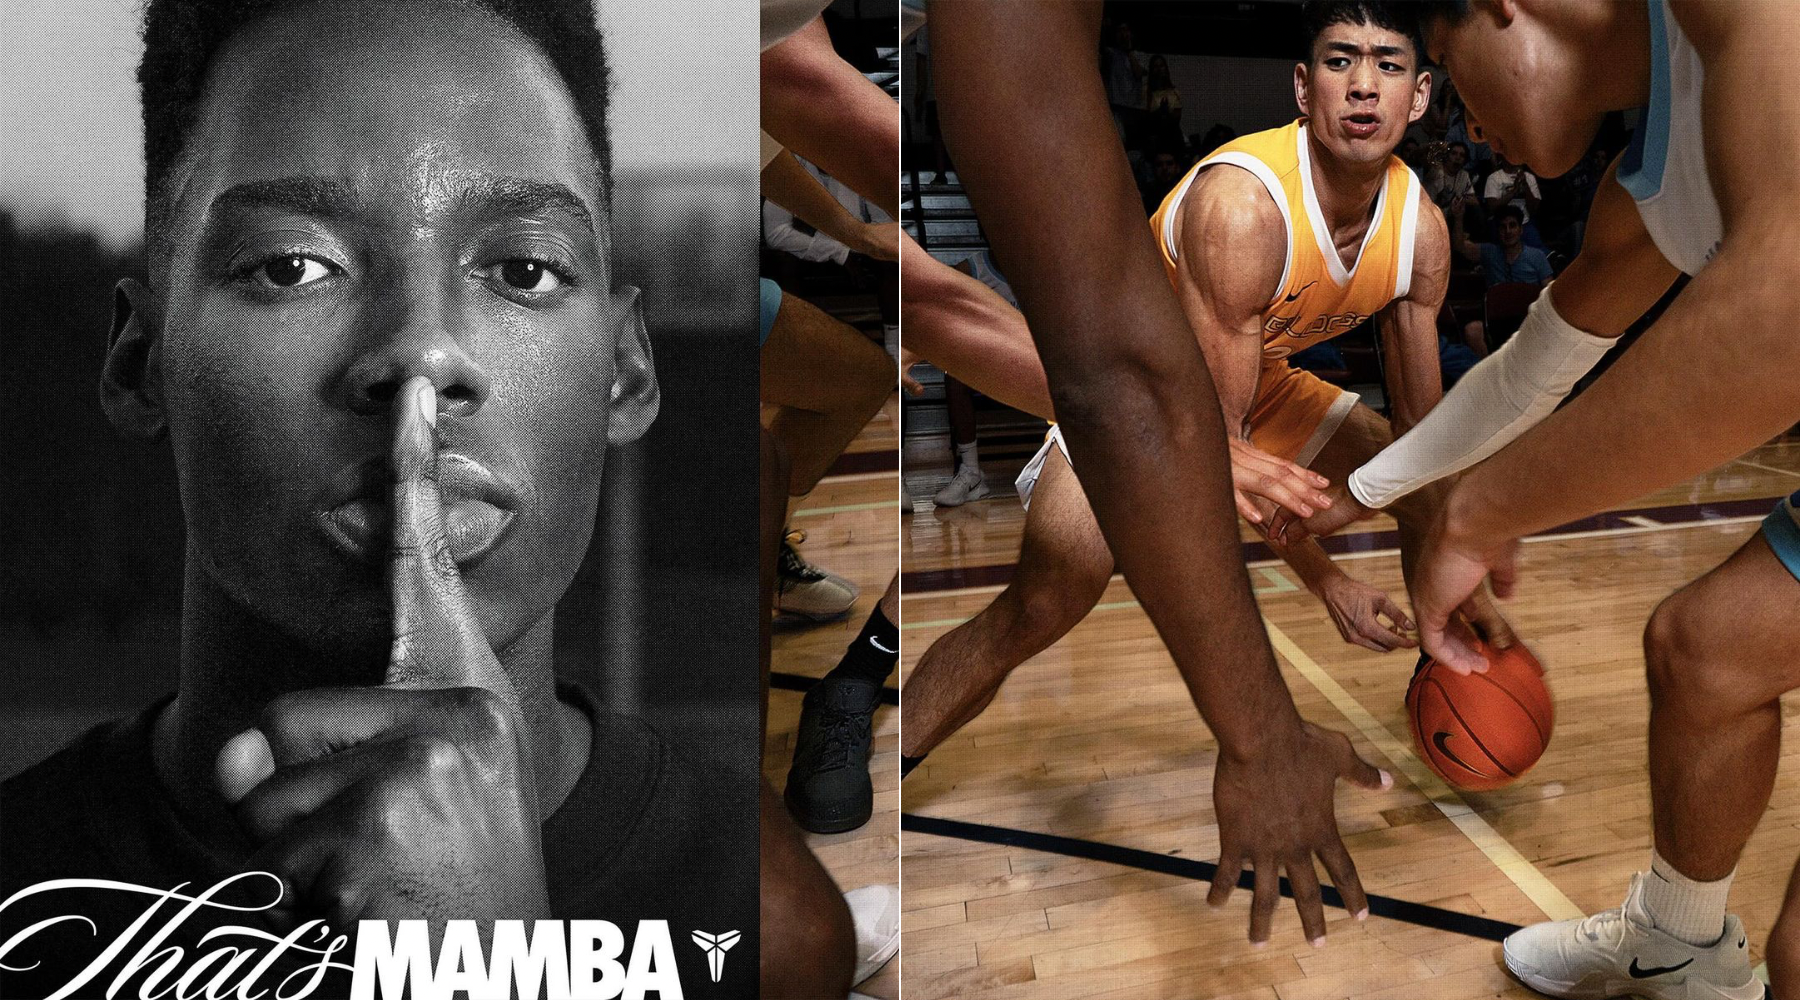 Koji domaći fotograf stoji iza Nike kampanje inspirisane Mamba mentality mantrom koju je zagovarao Kobe Bryant?